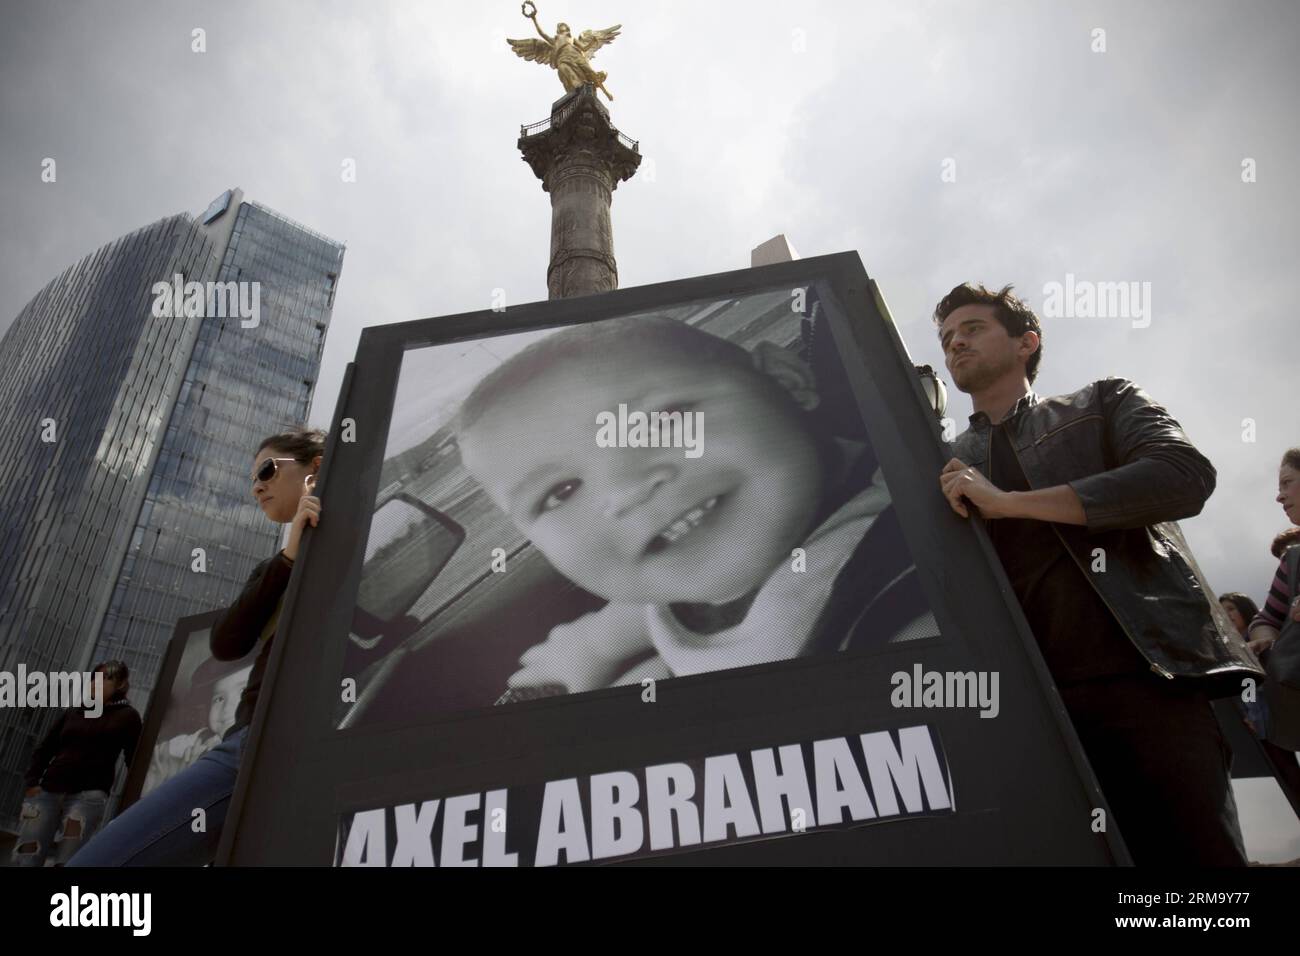 (140606) -- MEXIKO-STADT, 5. Juni 2014 (Xinhua) -- Menschen halten ein Foto eines Opfers des Feuers in der ABC-Kinderkrippe während einer Kundgebung in Mexiko-Stadt, Hauptstadt von Mexiko, 5. Juni 2014. Die Bewohner nehmen an einer Kundgebung zum 5. Jahrestag des Brandes in der ABC-Kinderkrippe in Sonora, Mexiko, Teil, bei der 49 Kinder starben. (Xinhua/Alejandro Ayala) (zhf) MEXIKO-MEXIKO-STADT-GESELLSCHAFT-RALLYE PUBLICATIONxNOTxINxCHN Mexiko-Stadt 5. Juni 2014 XINHUA Prominente Halten Sie ein Foto eines Opfers des Feuers in der ABC Kinderstube während einer Rallye in Mexiko-Stadt Hauptstadt von Mexiko 5. Juni 2014 Einwohner nehmen an einer Rallye Teil Stockfoto